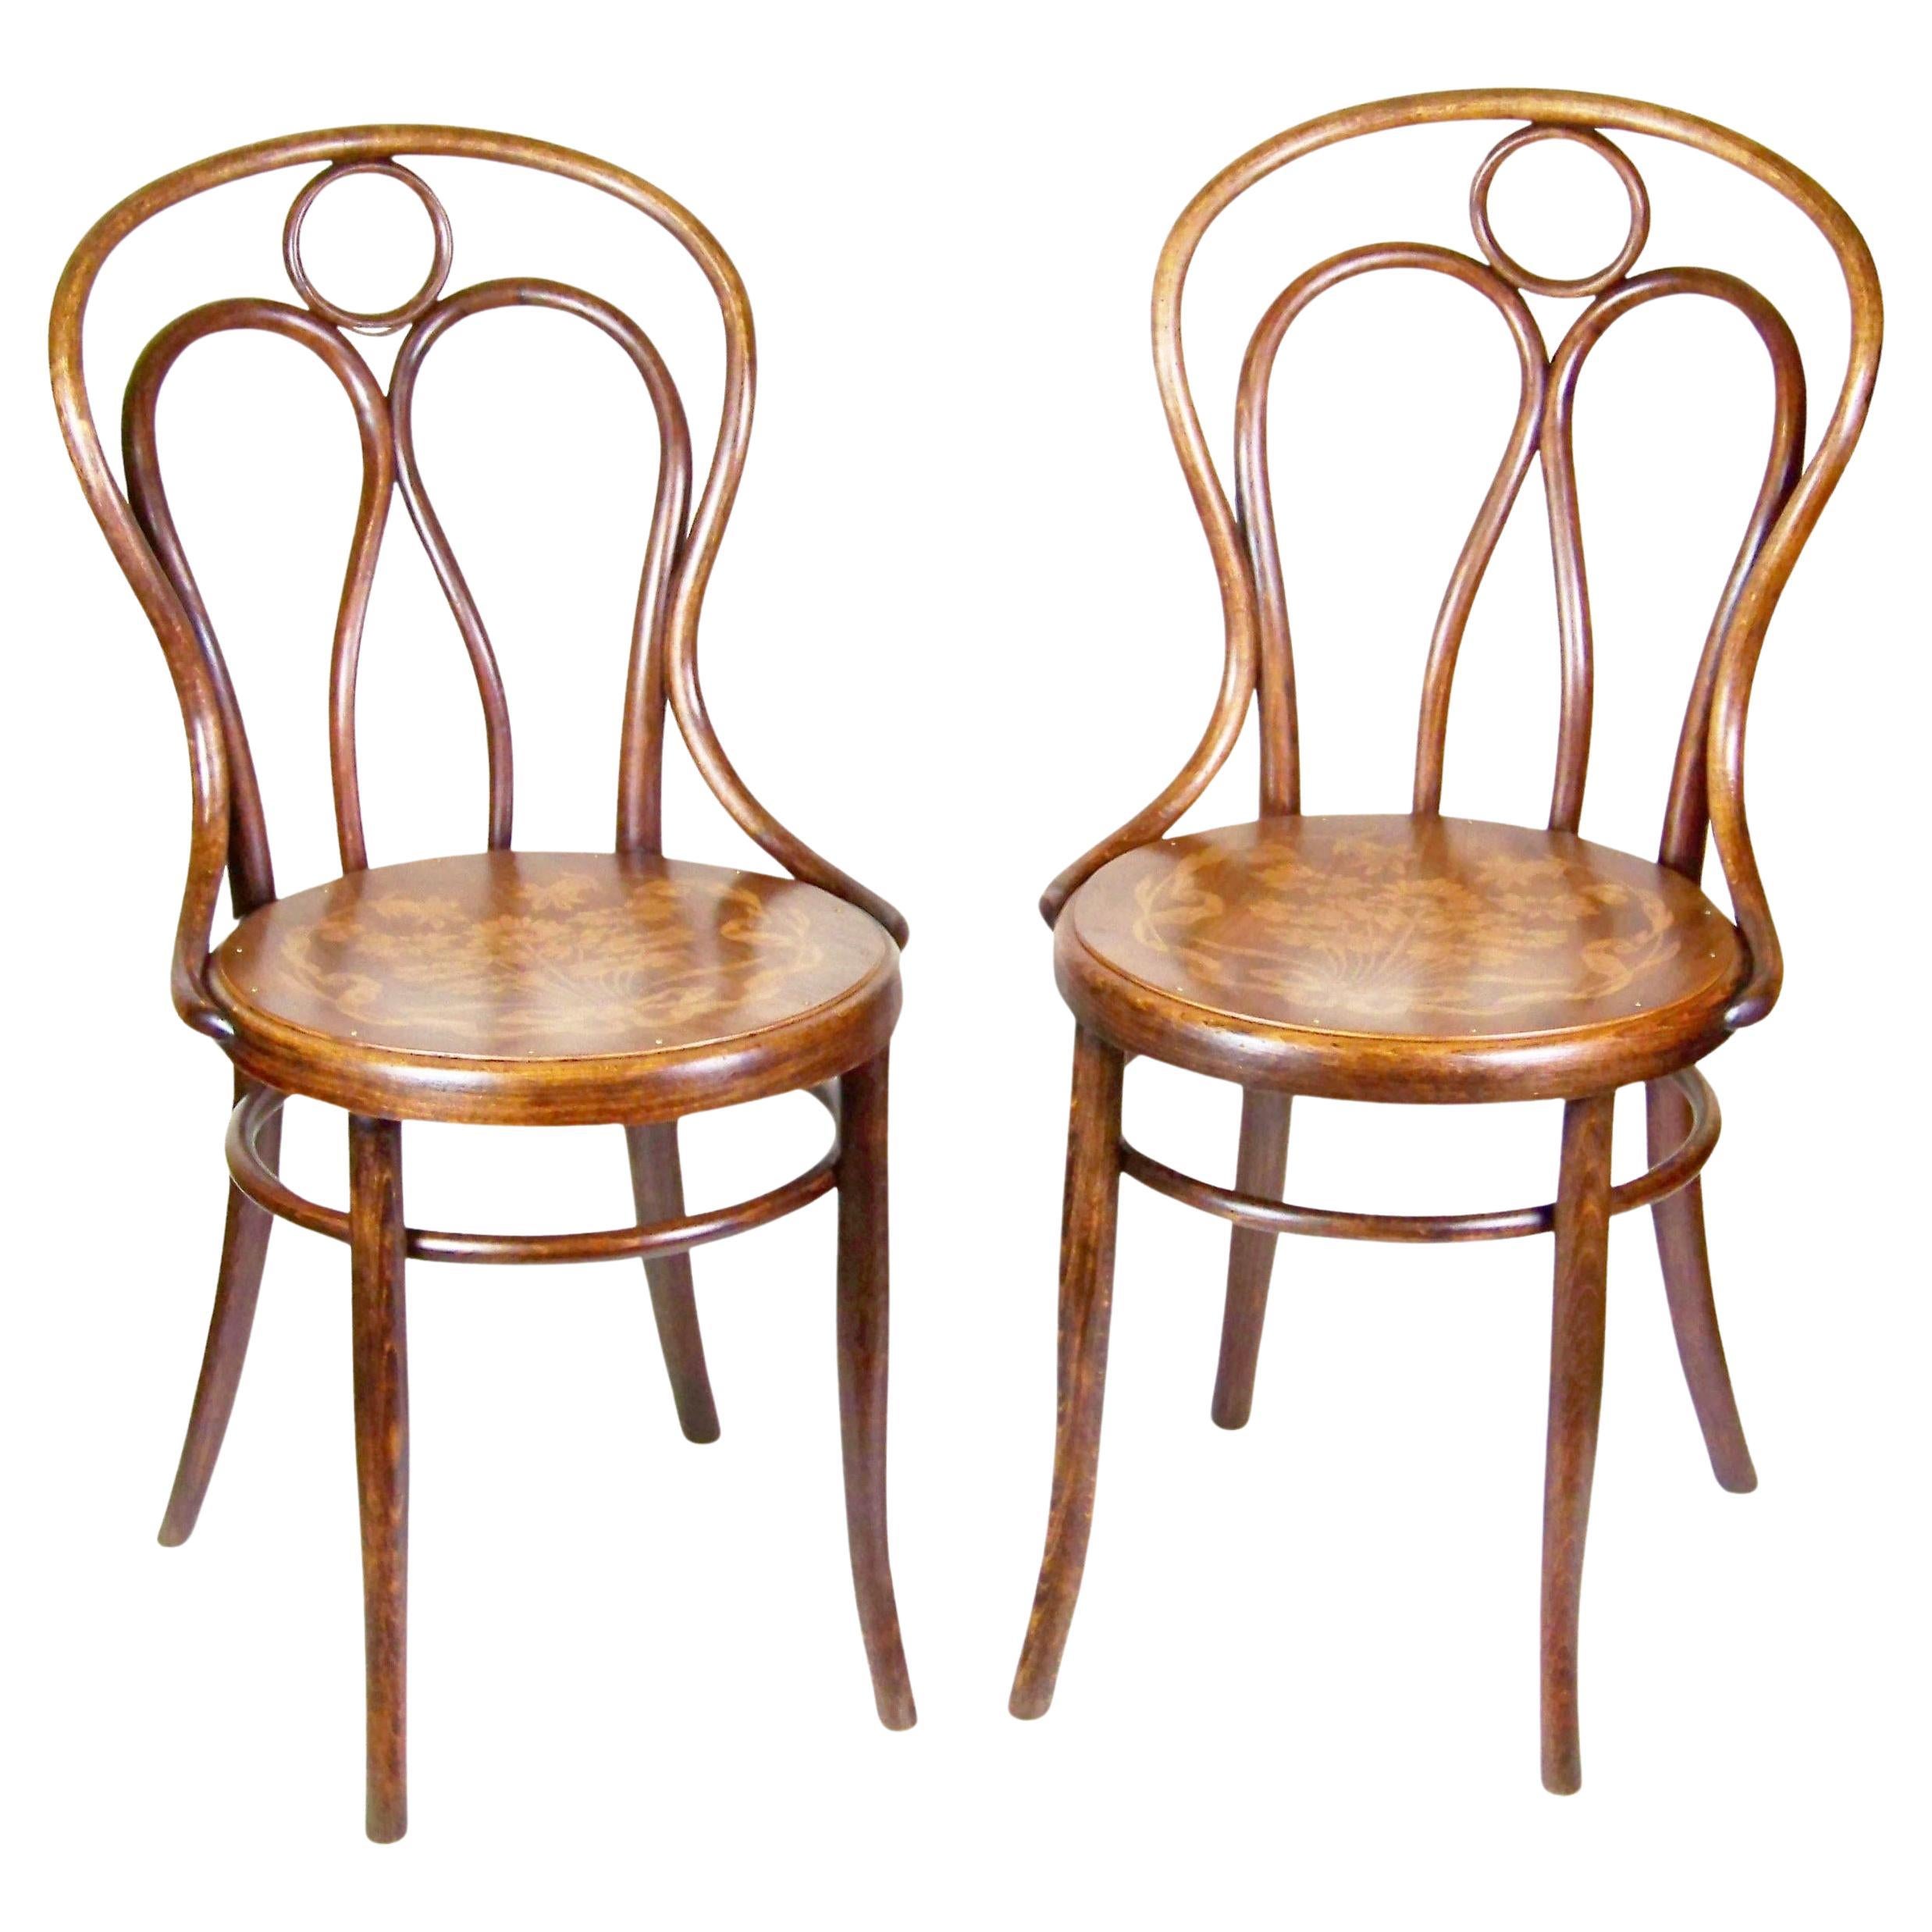 Two Chairs Thonet Nr.19, circa 1900